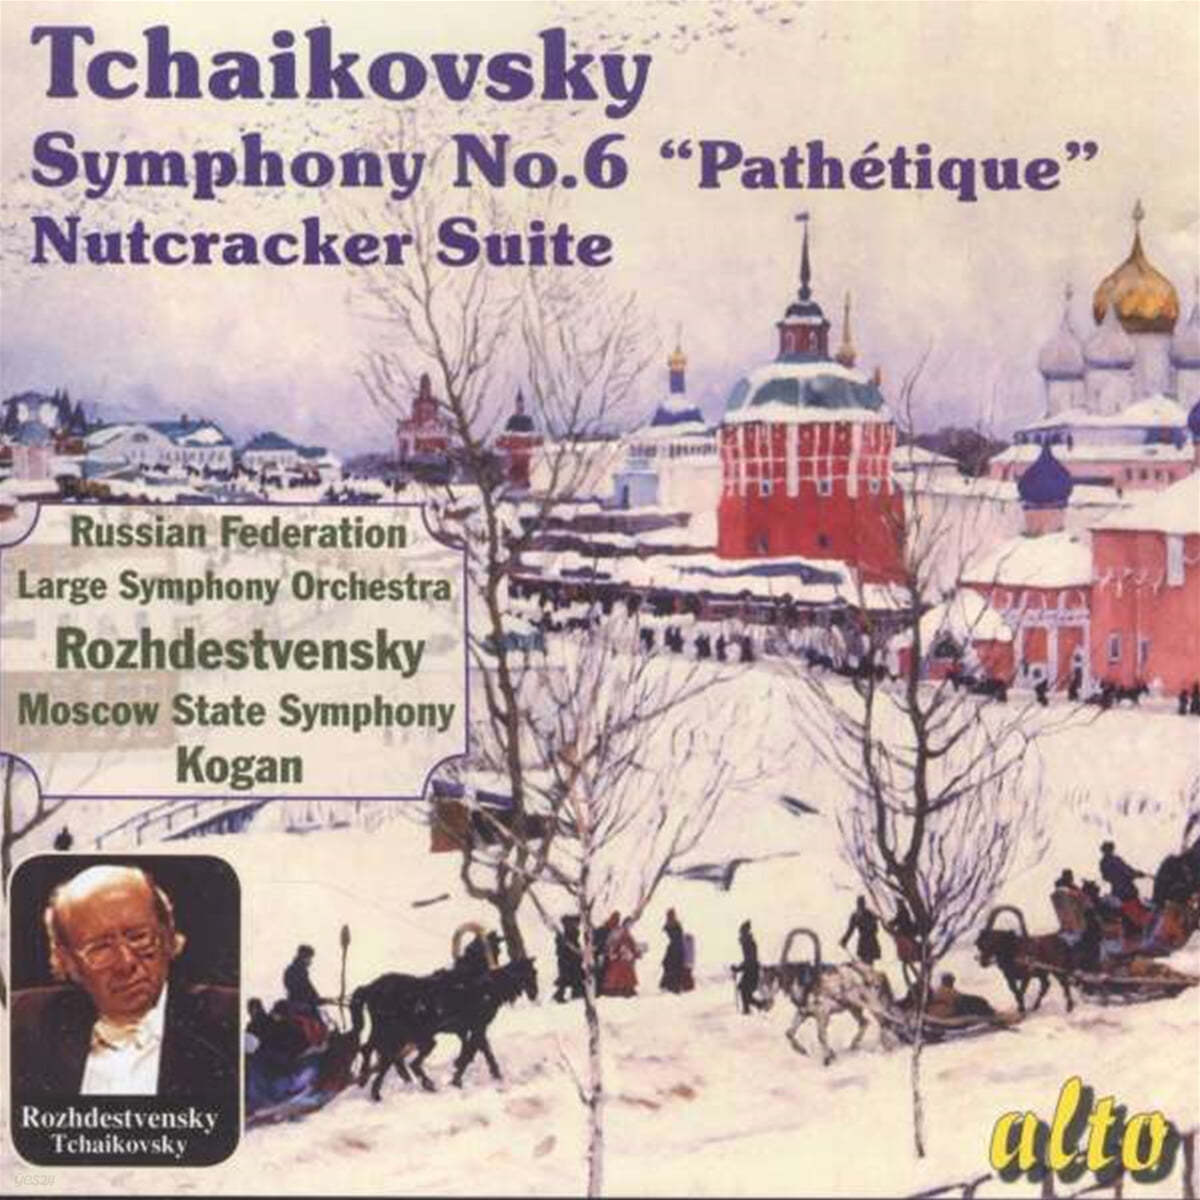 Pavel Kogan 차이코프스키: 교향곡 6번, 호두까기 인형 모음집 (Tchaikovsky: Symphony No.6 "Pathetique", Nutcracker Suite) 